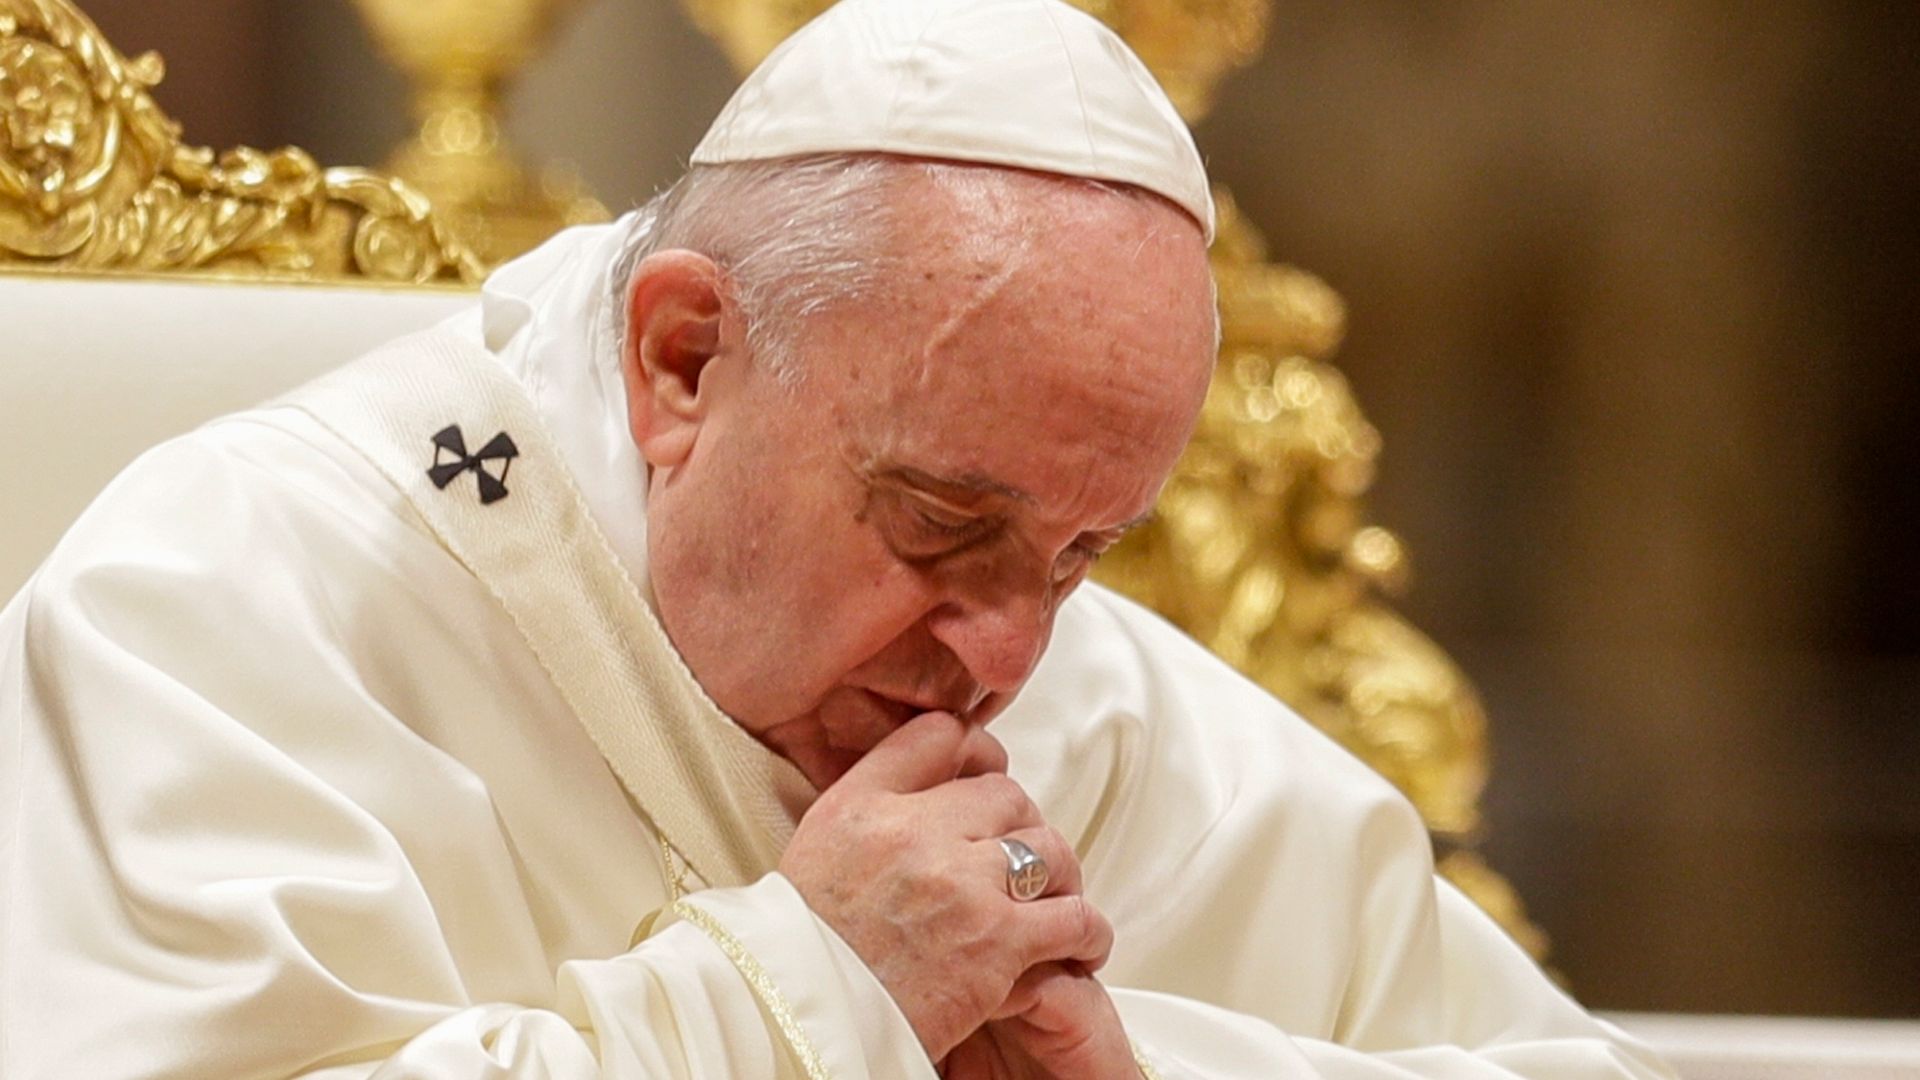 El papa Francisco cierra la puerta del sacerdocio a hombres casados y mujeres